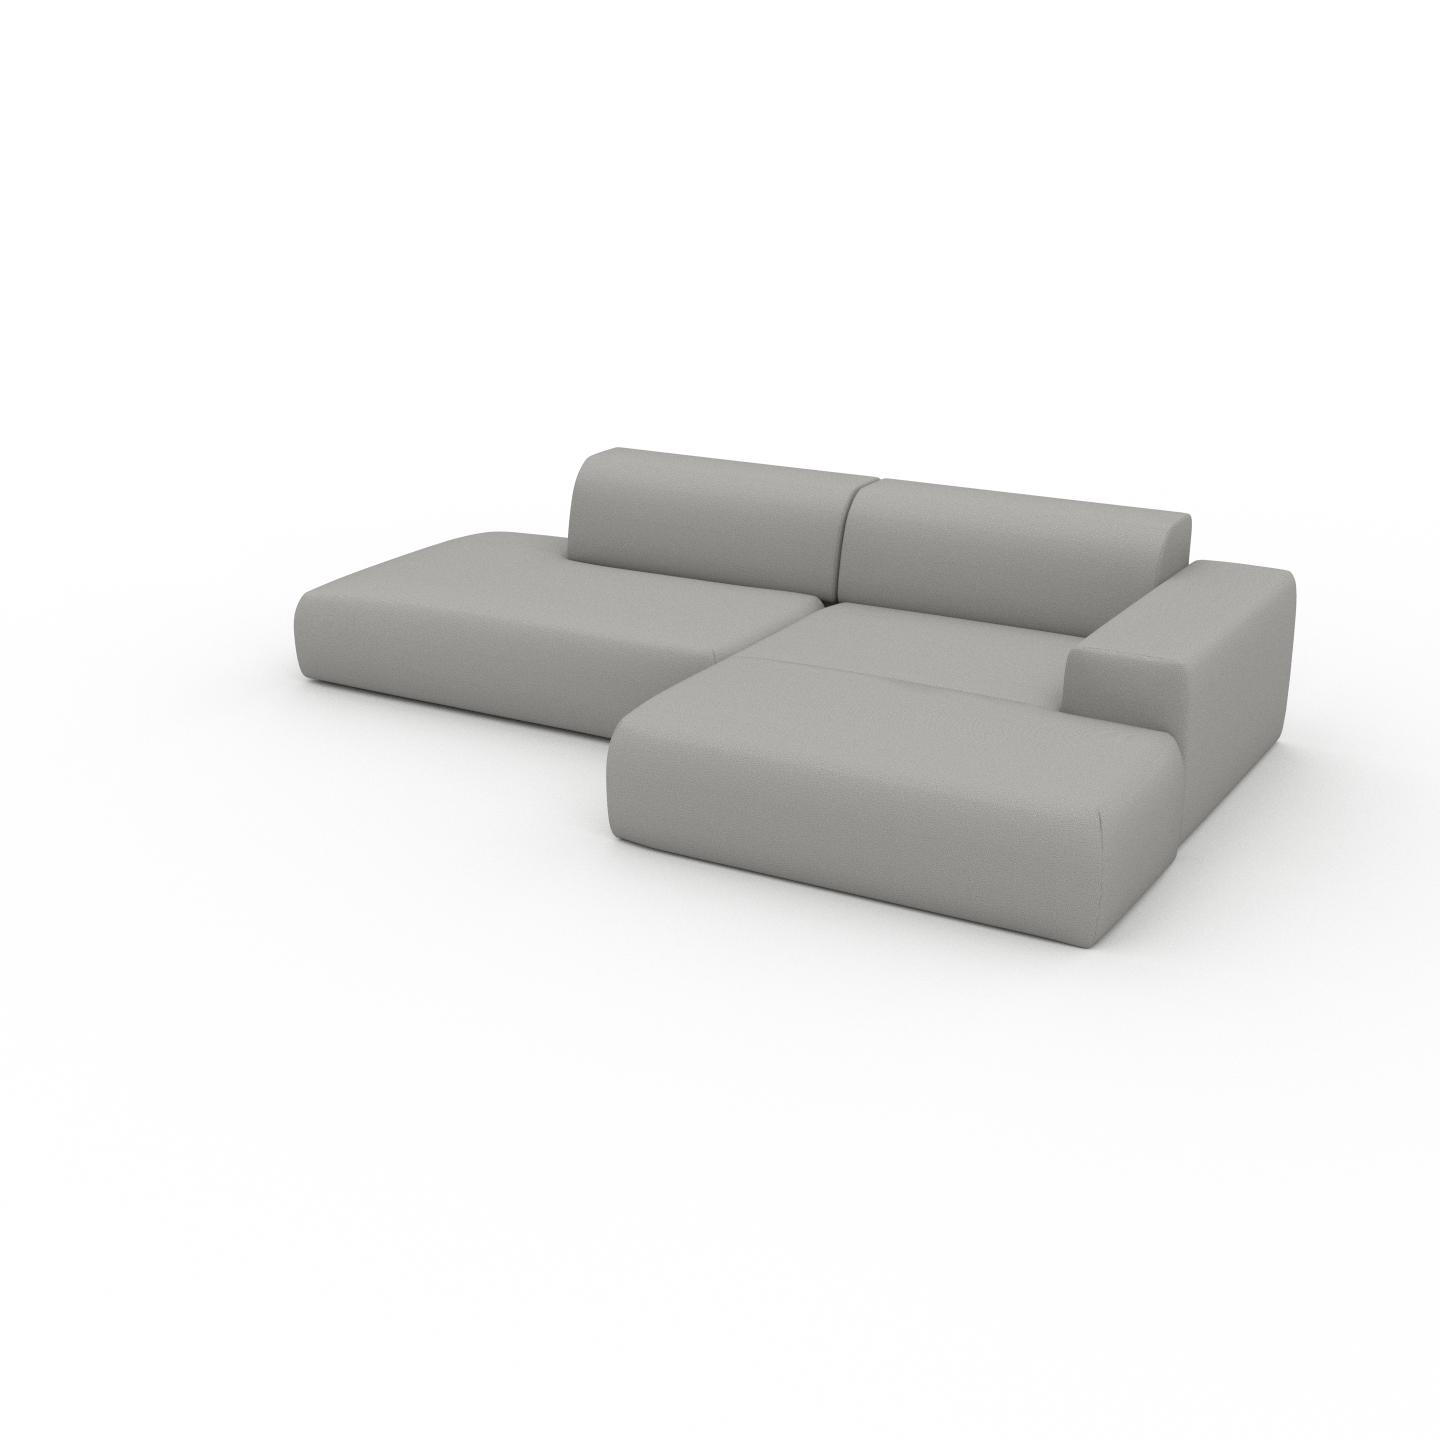 MYCS Ecksofa Sandgrau - Flexible Designer-Polsterecke, L-Form: Beste Qualität, einzigartiges Design - 296 x 72 x 168 cm, konfigurierbar